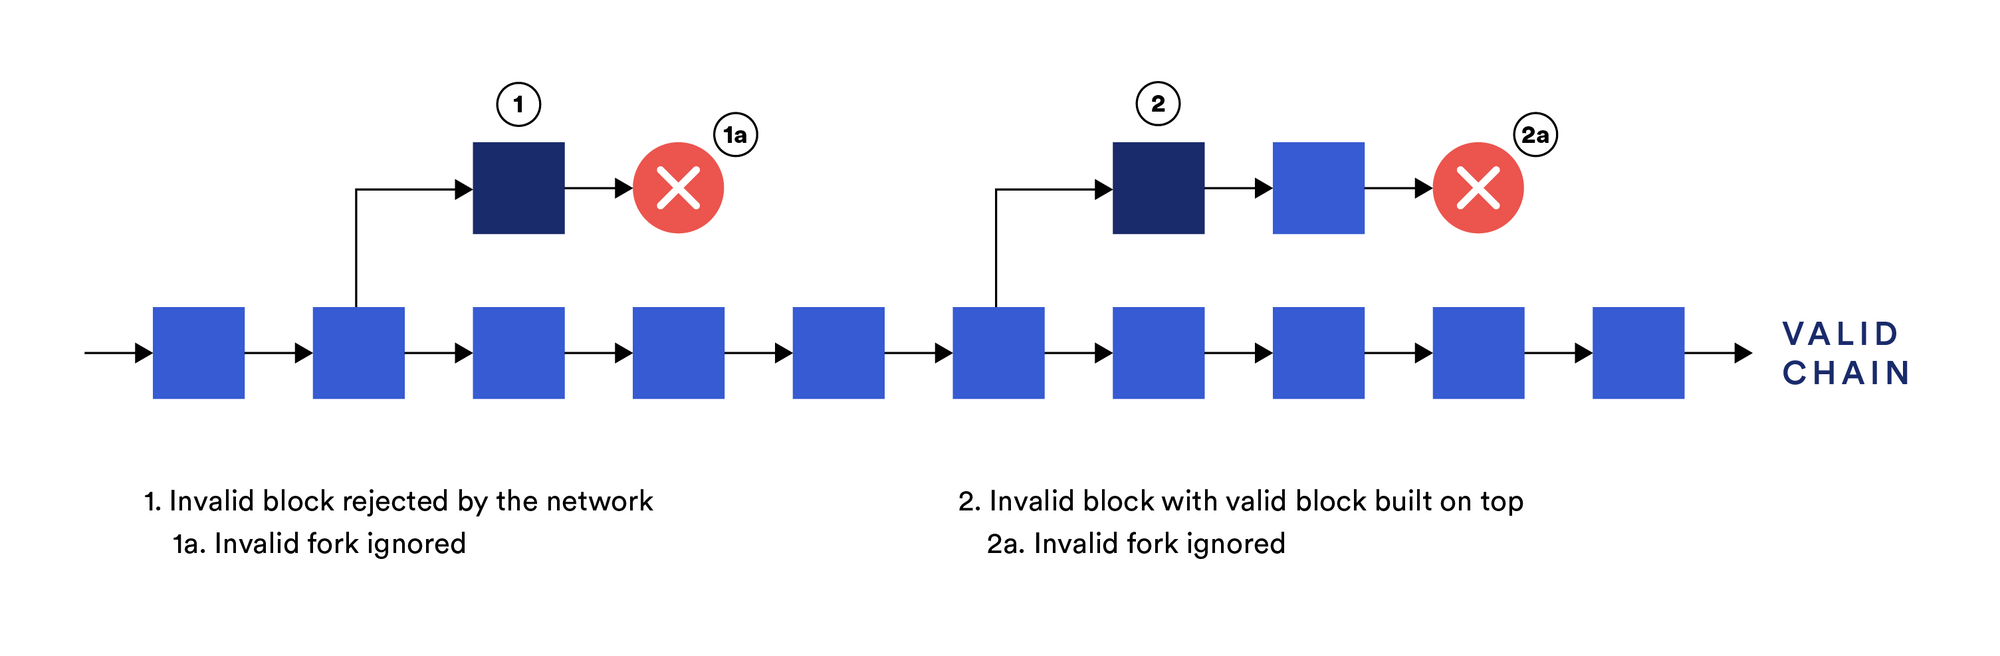 Недействительные блоки отвергаются полными узлами, которые продолжают следовать за действительной цепочкой блоков.